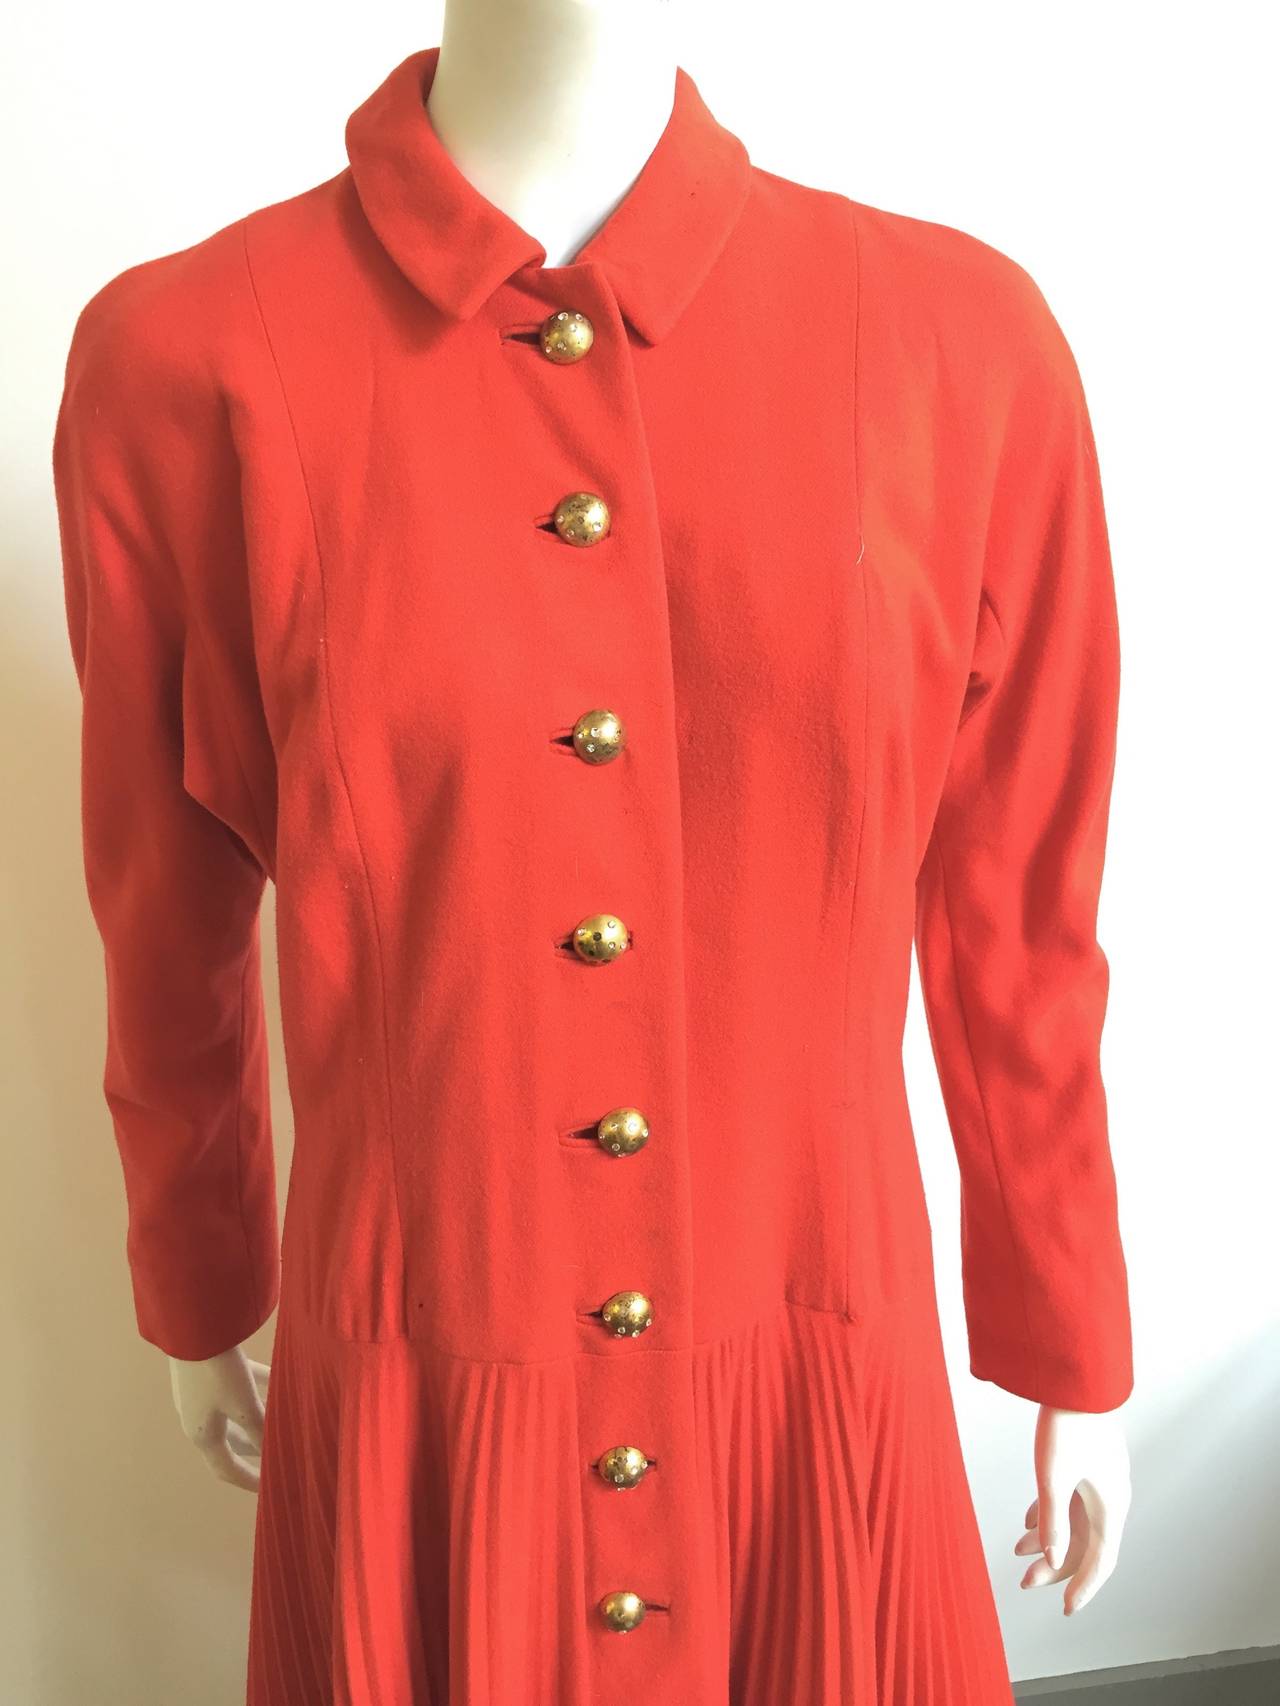 Women's Hattie Carnegie 1940s Coat Size 10. For Sale